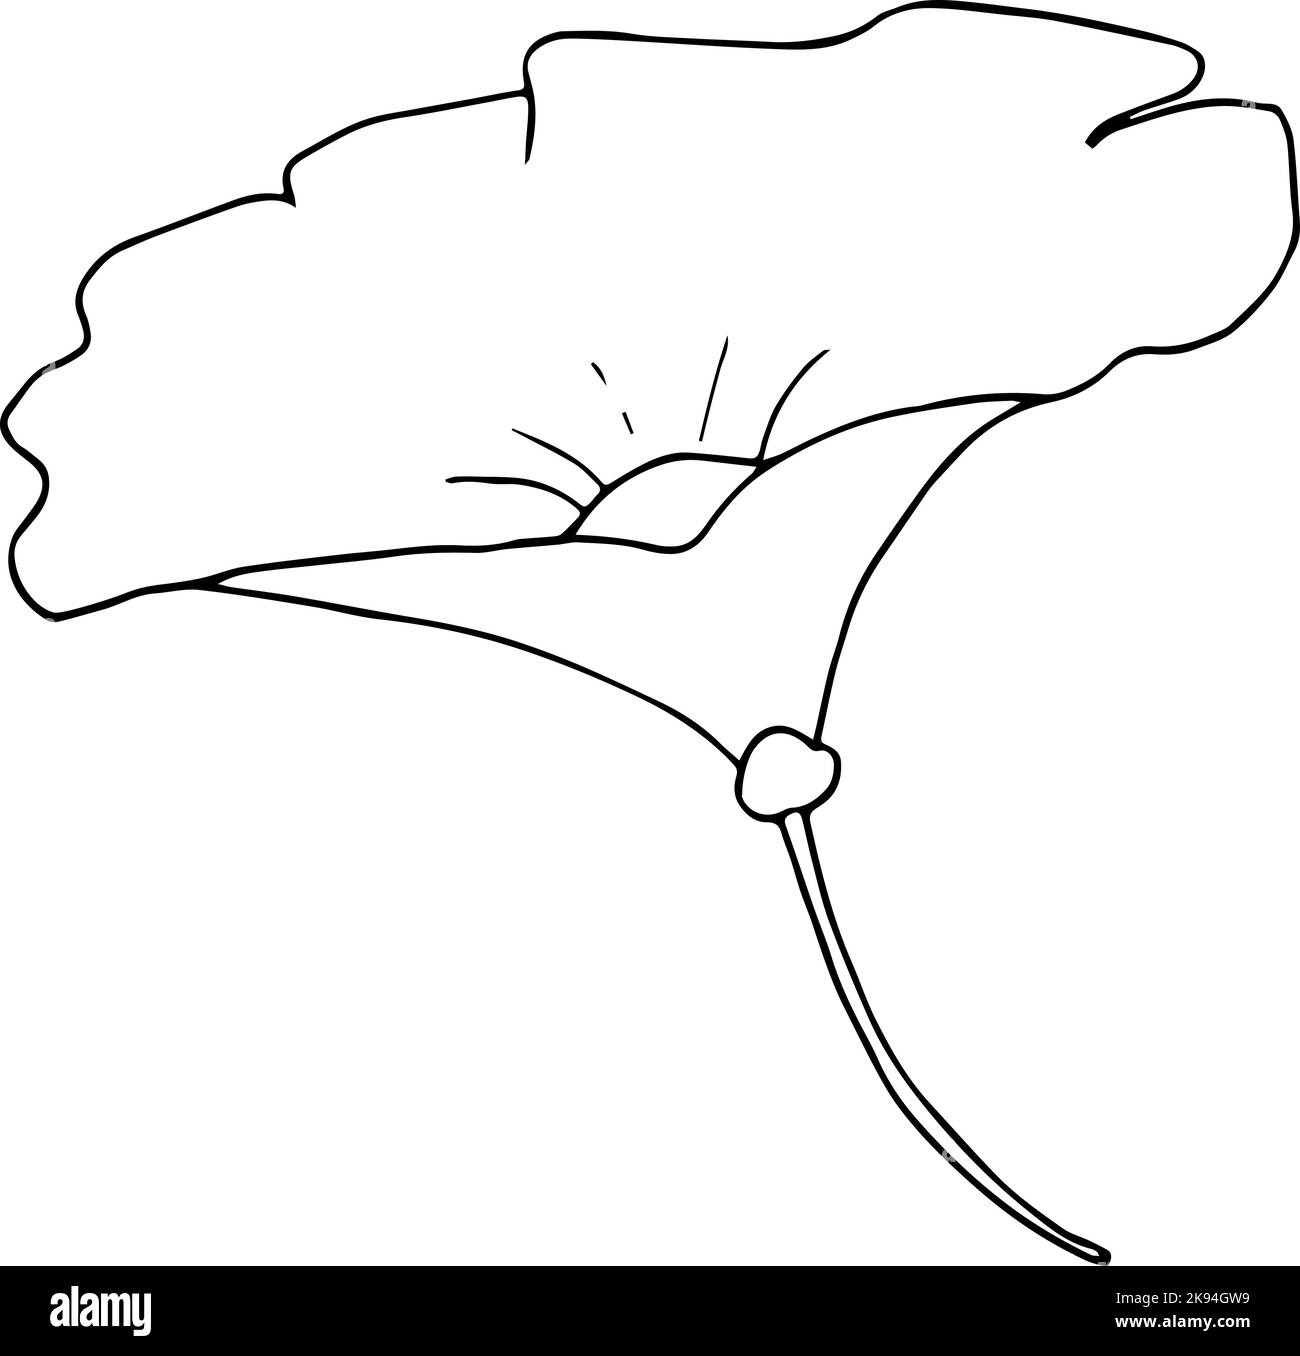 Flor simple dibujada a mano aislada sobre fondo blanco. Arte vectorial Ilustración del Vector